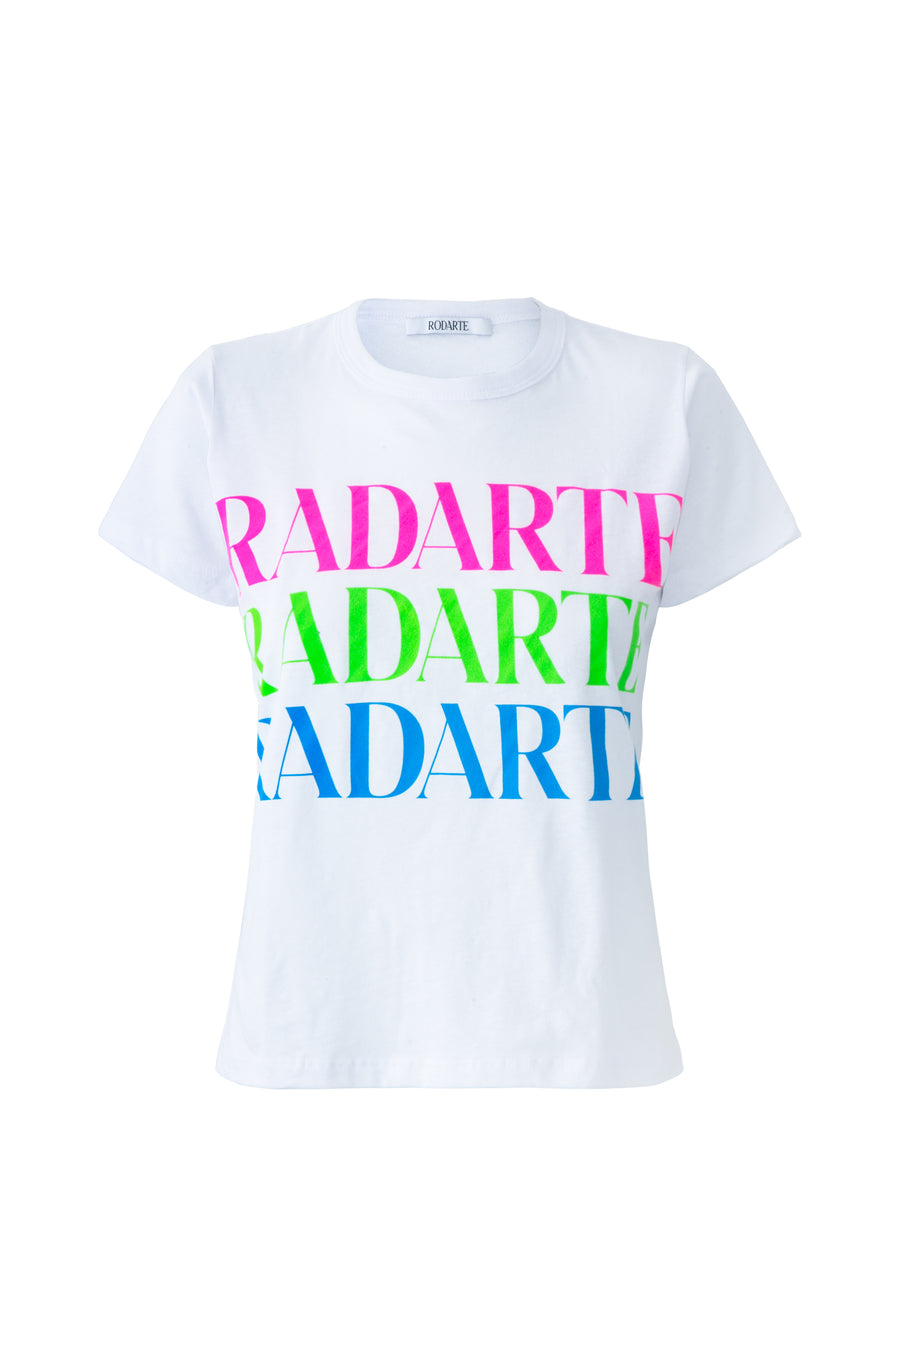 Block Font Radarte T-Shirt